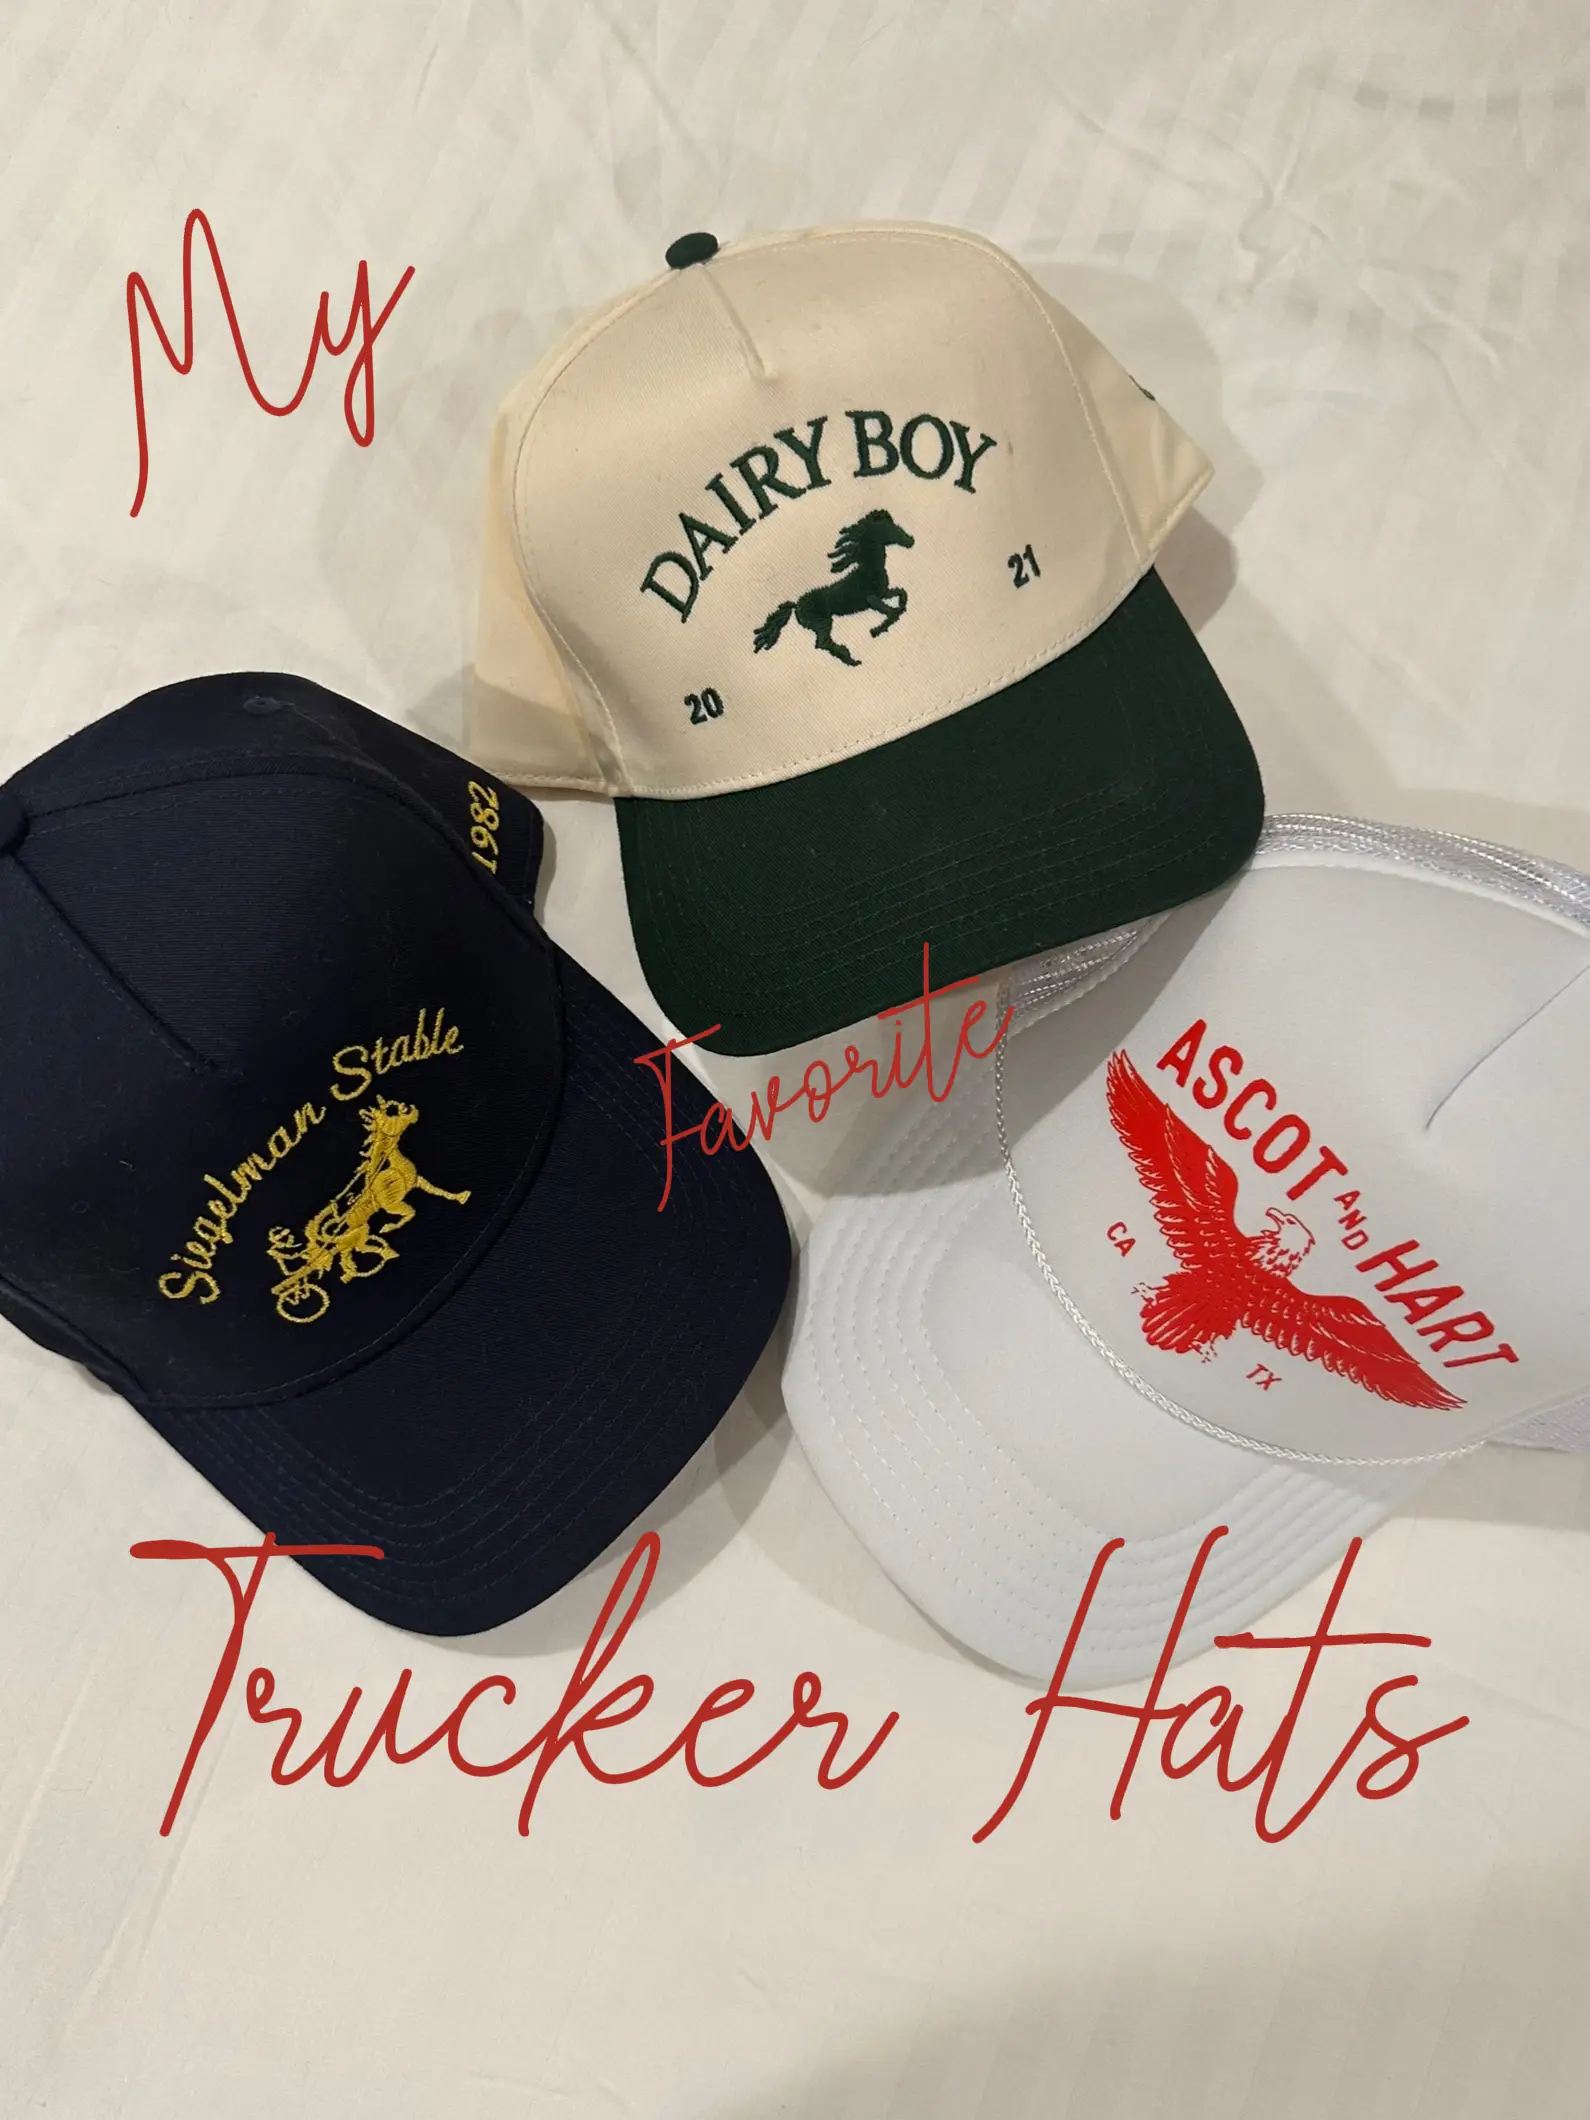 Hats & Hair Accessories  Preppy accessories, Pink trucker hat, Trucker hat